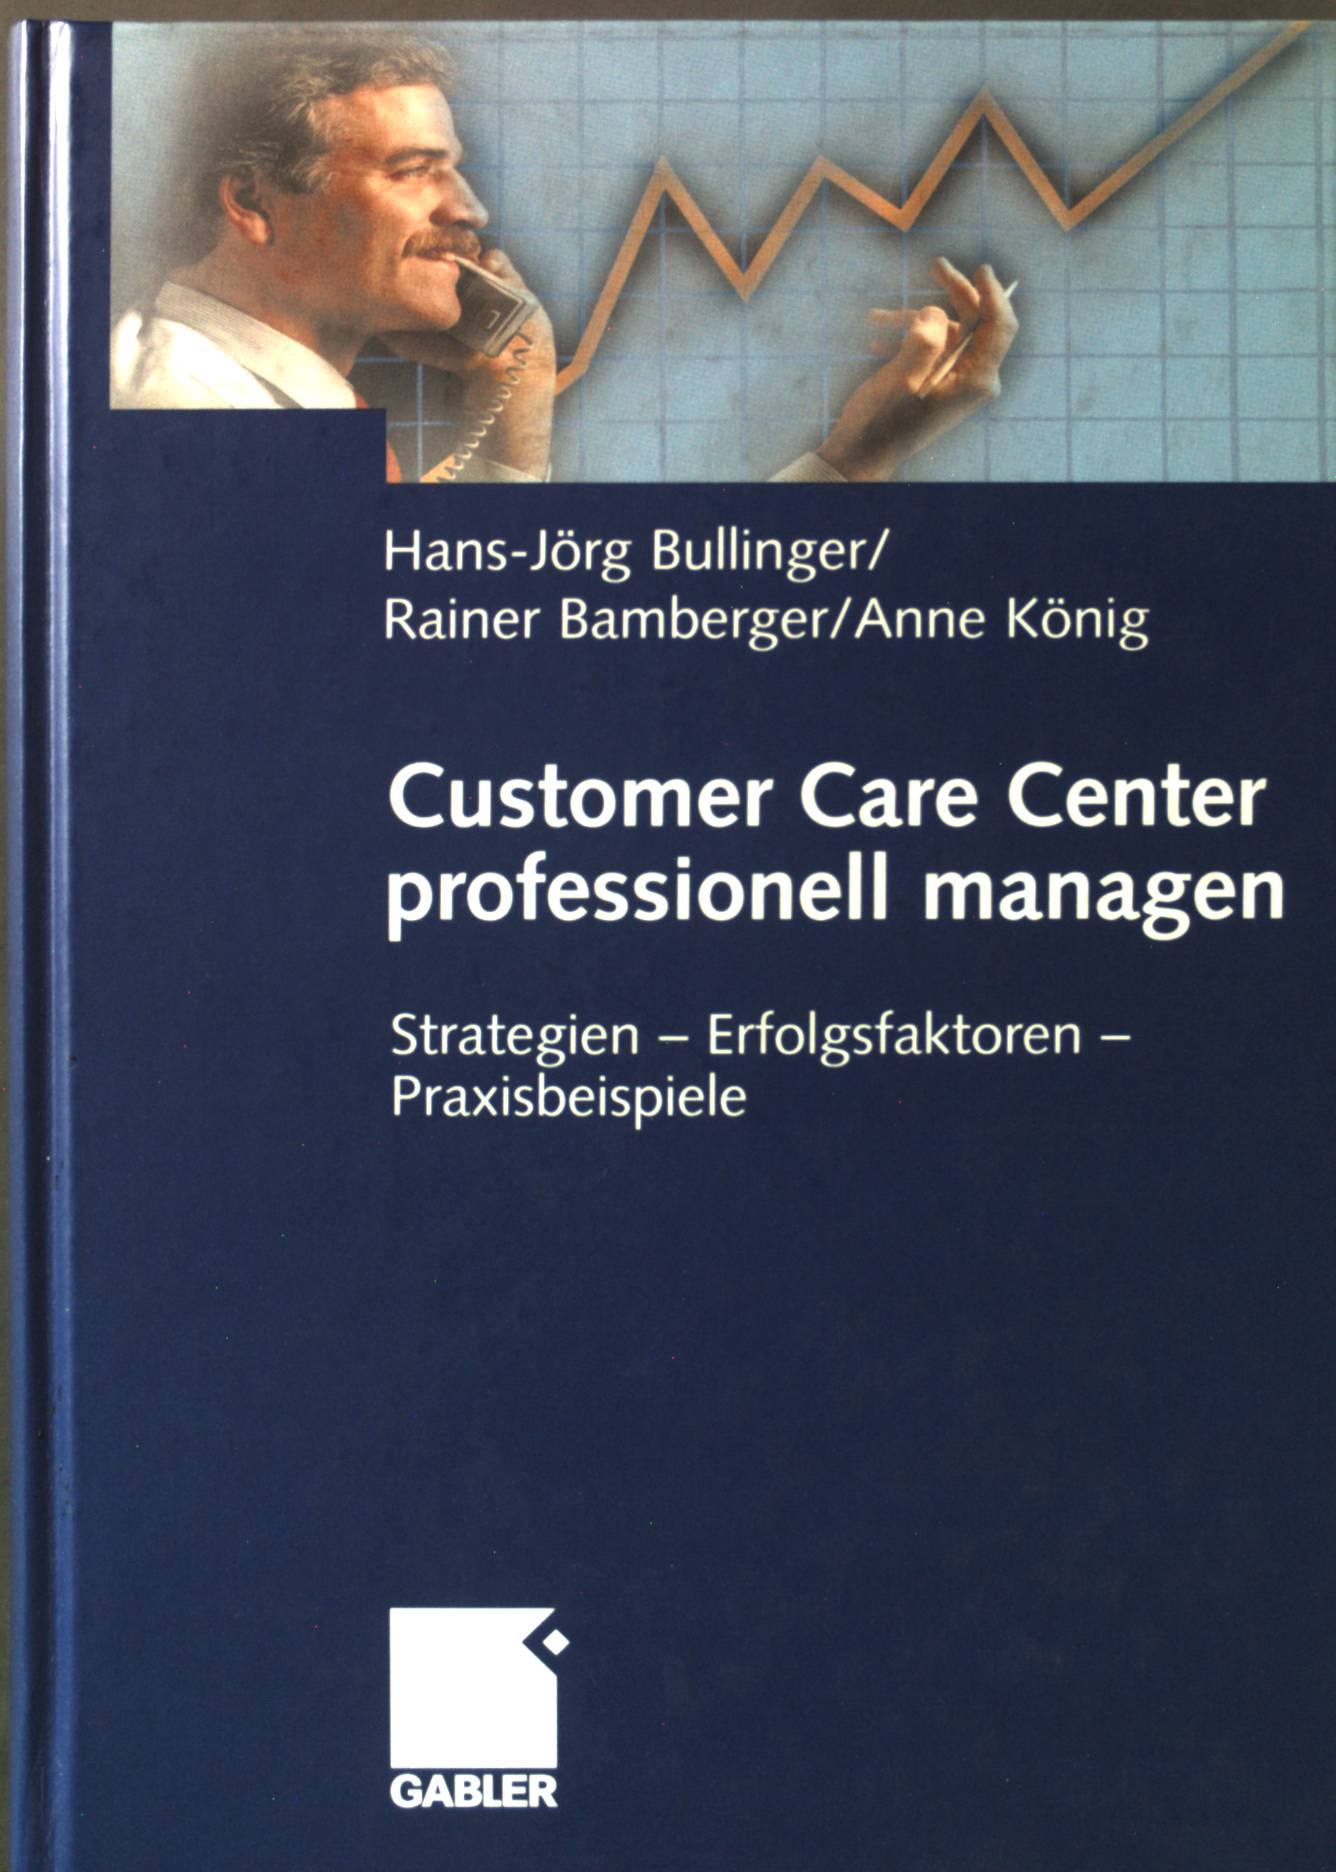 Customer Care Center professionell managen: Strategien  Erfolgsfaktoren  Praxisbeispiele - Bullinger, Hans-Jörg, Rainer Bamberger und Anne König